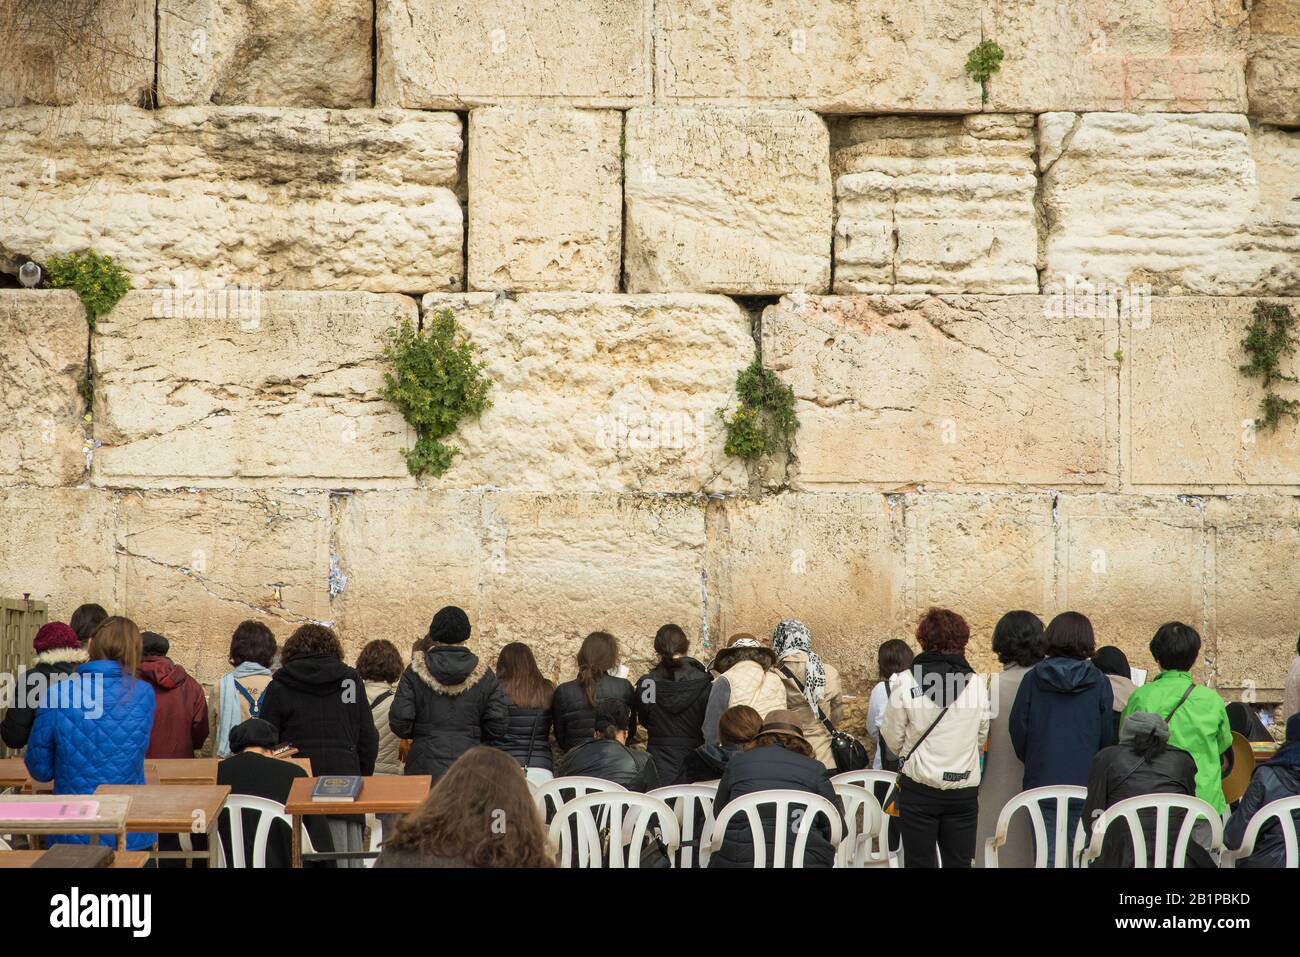 Vue d'ensemble du mur occidental dans la vieille ville de Jérusalem, Israël Banque D'Images